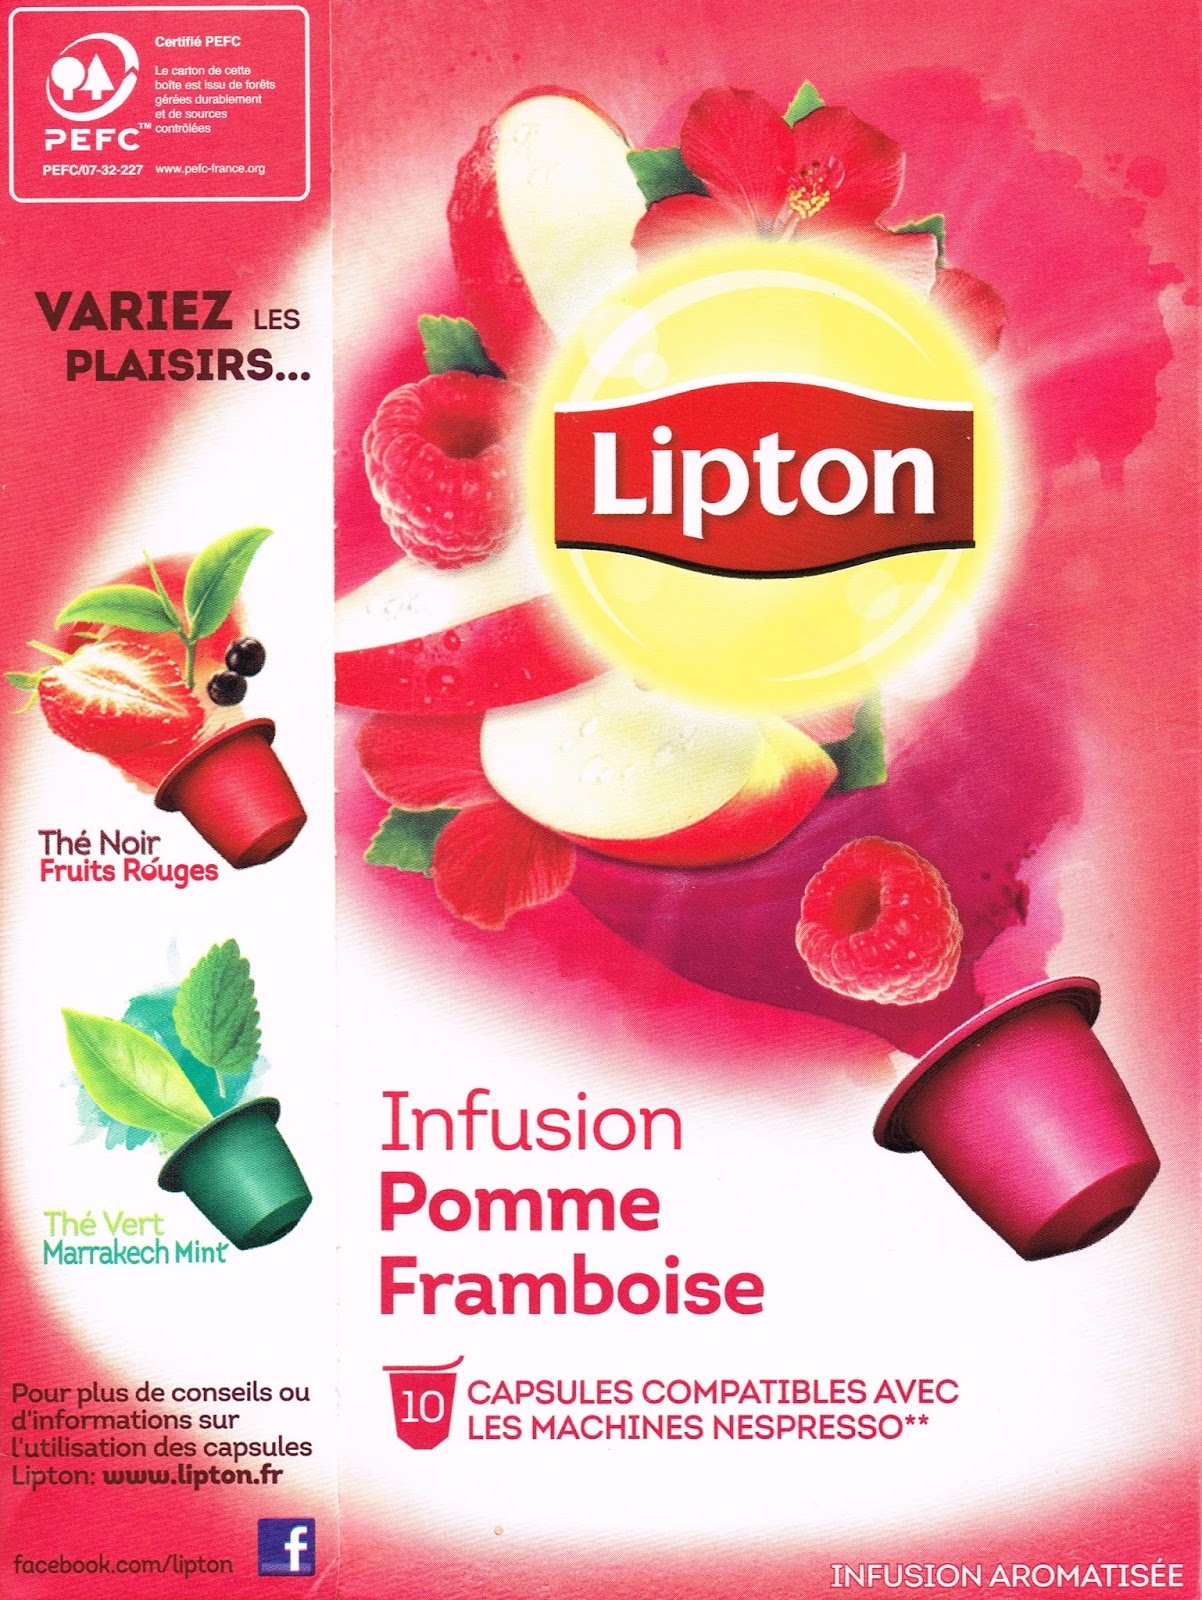 Test du jour : les capsules de thé Lipton : Femme Actuelle Le MAG